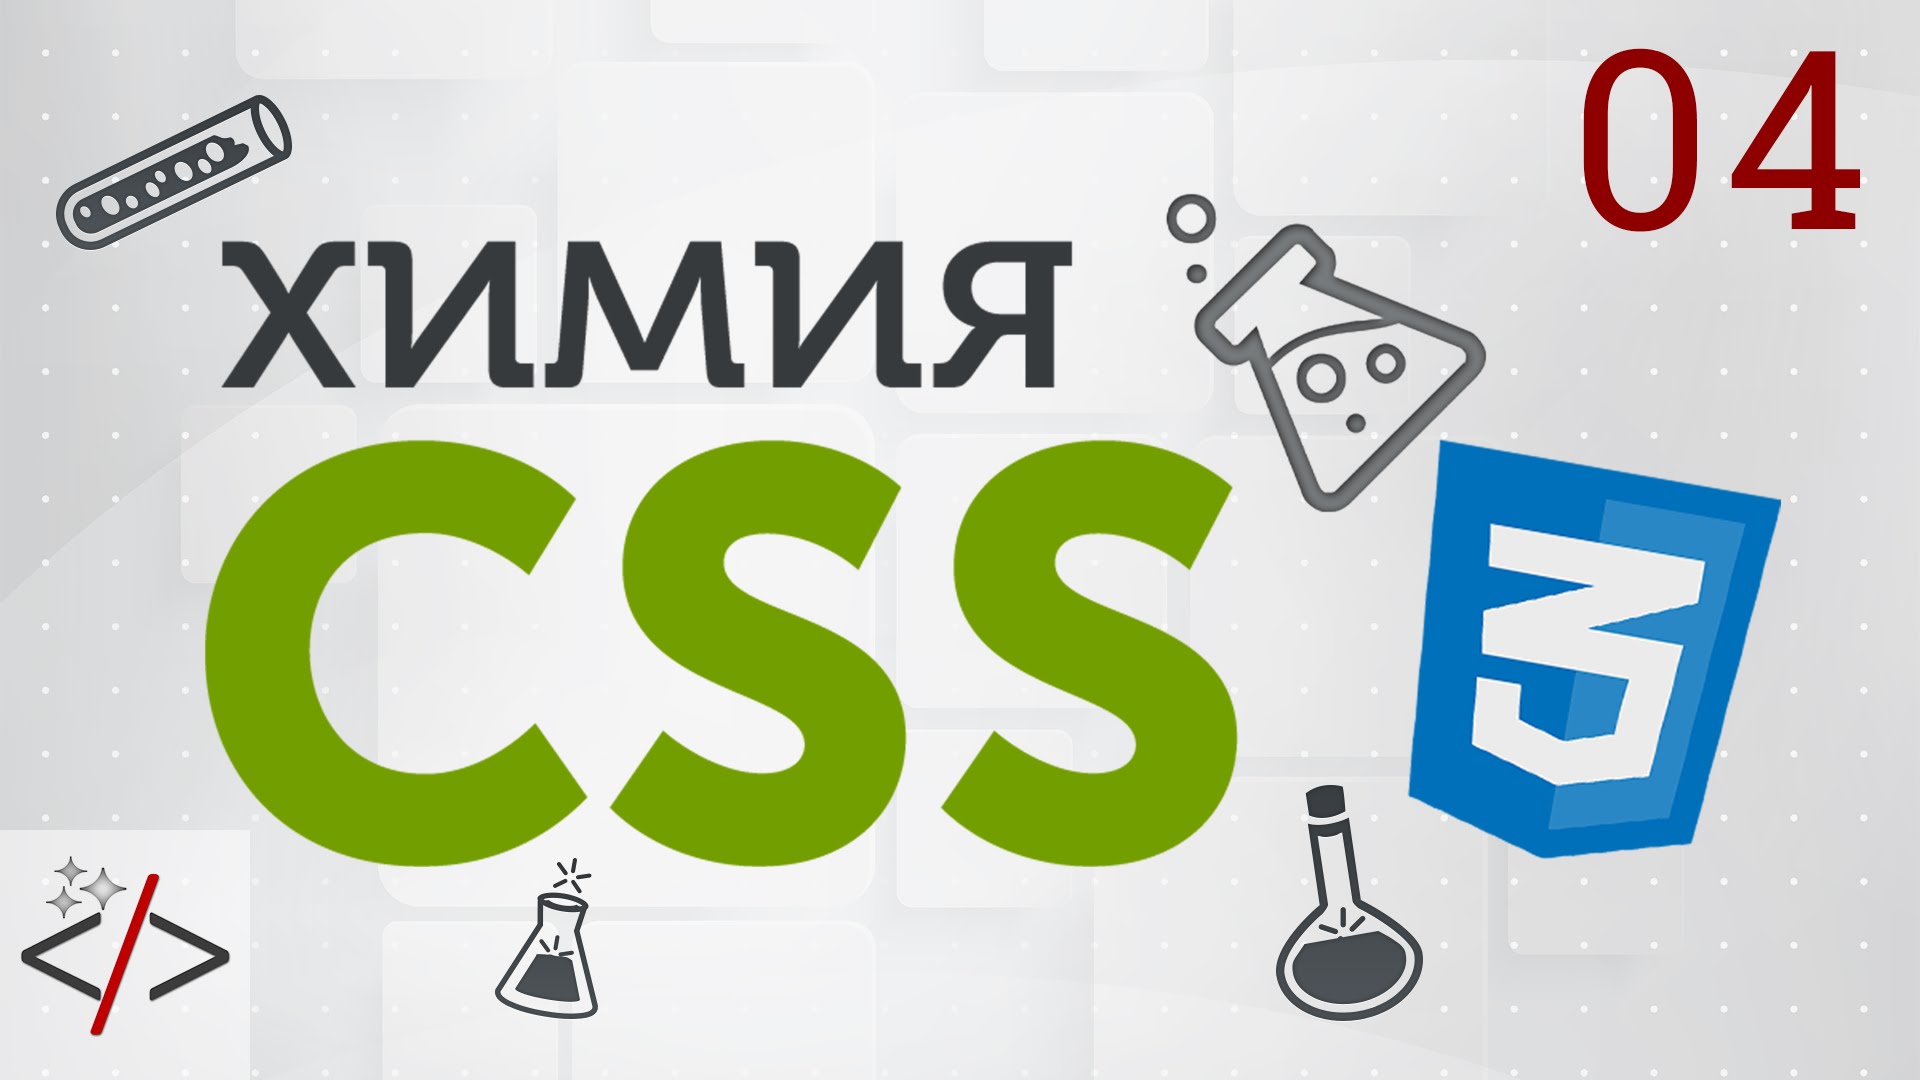 4. [Уроки по CSS3] Селекторы в CSS. Часть 2 - селекторы атрибутов  - «Видео уроки - CSS»